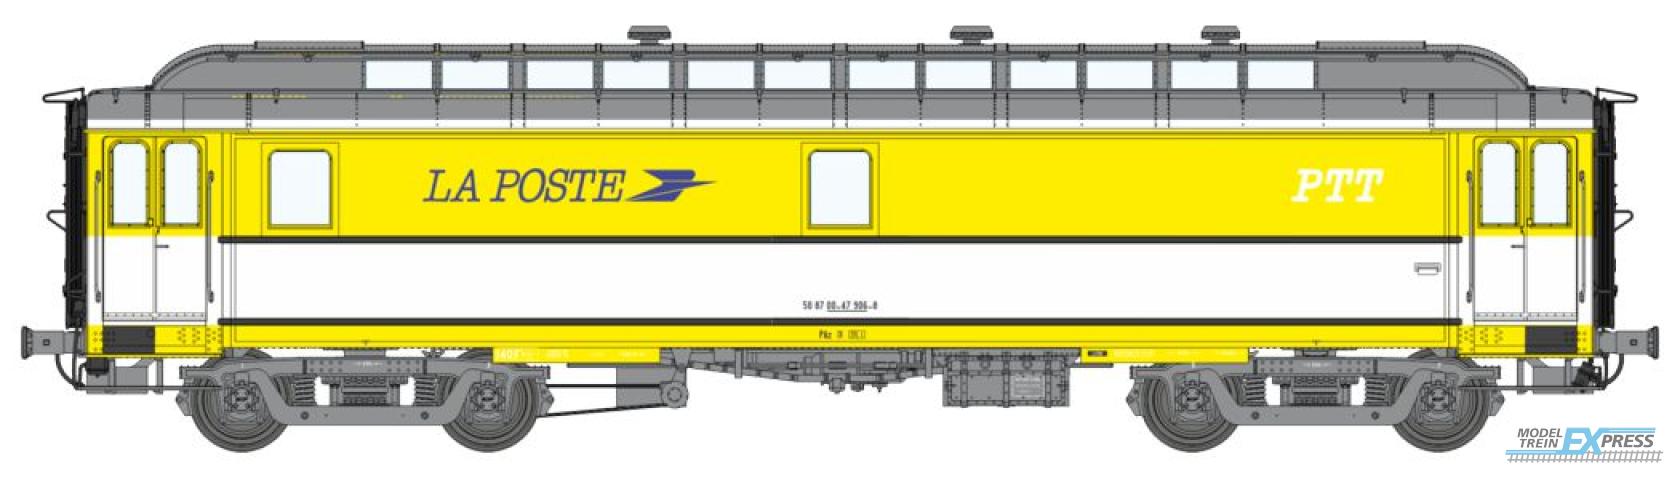 REE models VB-263 POSTAL OCEM 16 m Era IV-V PAz Yellow & white